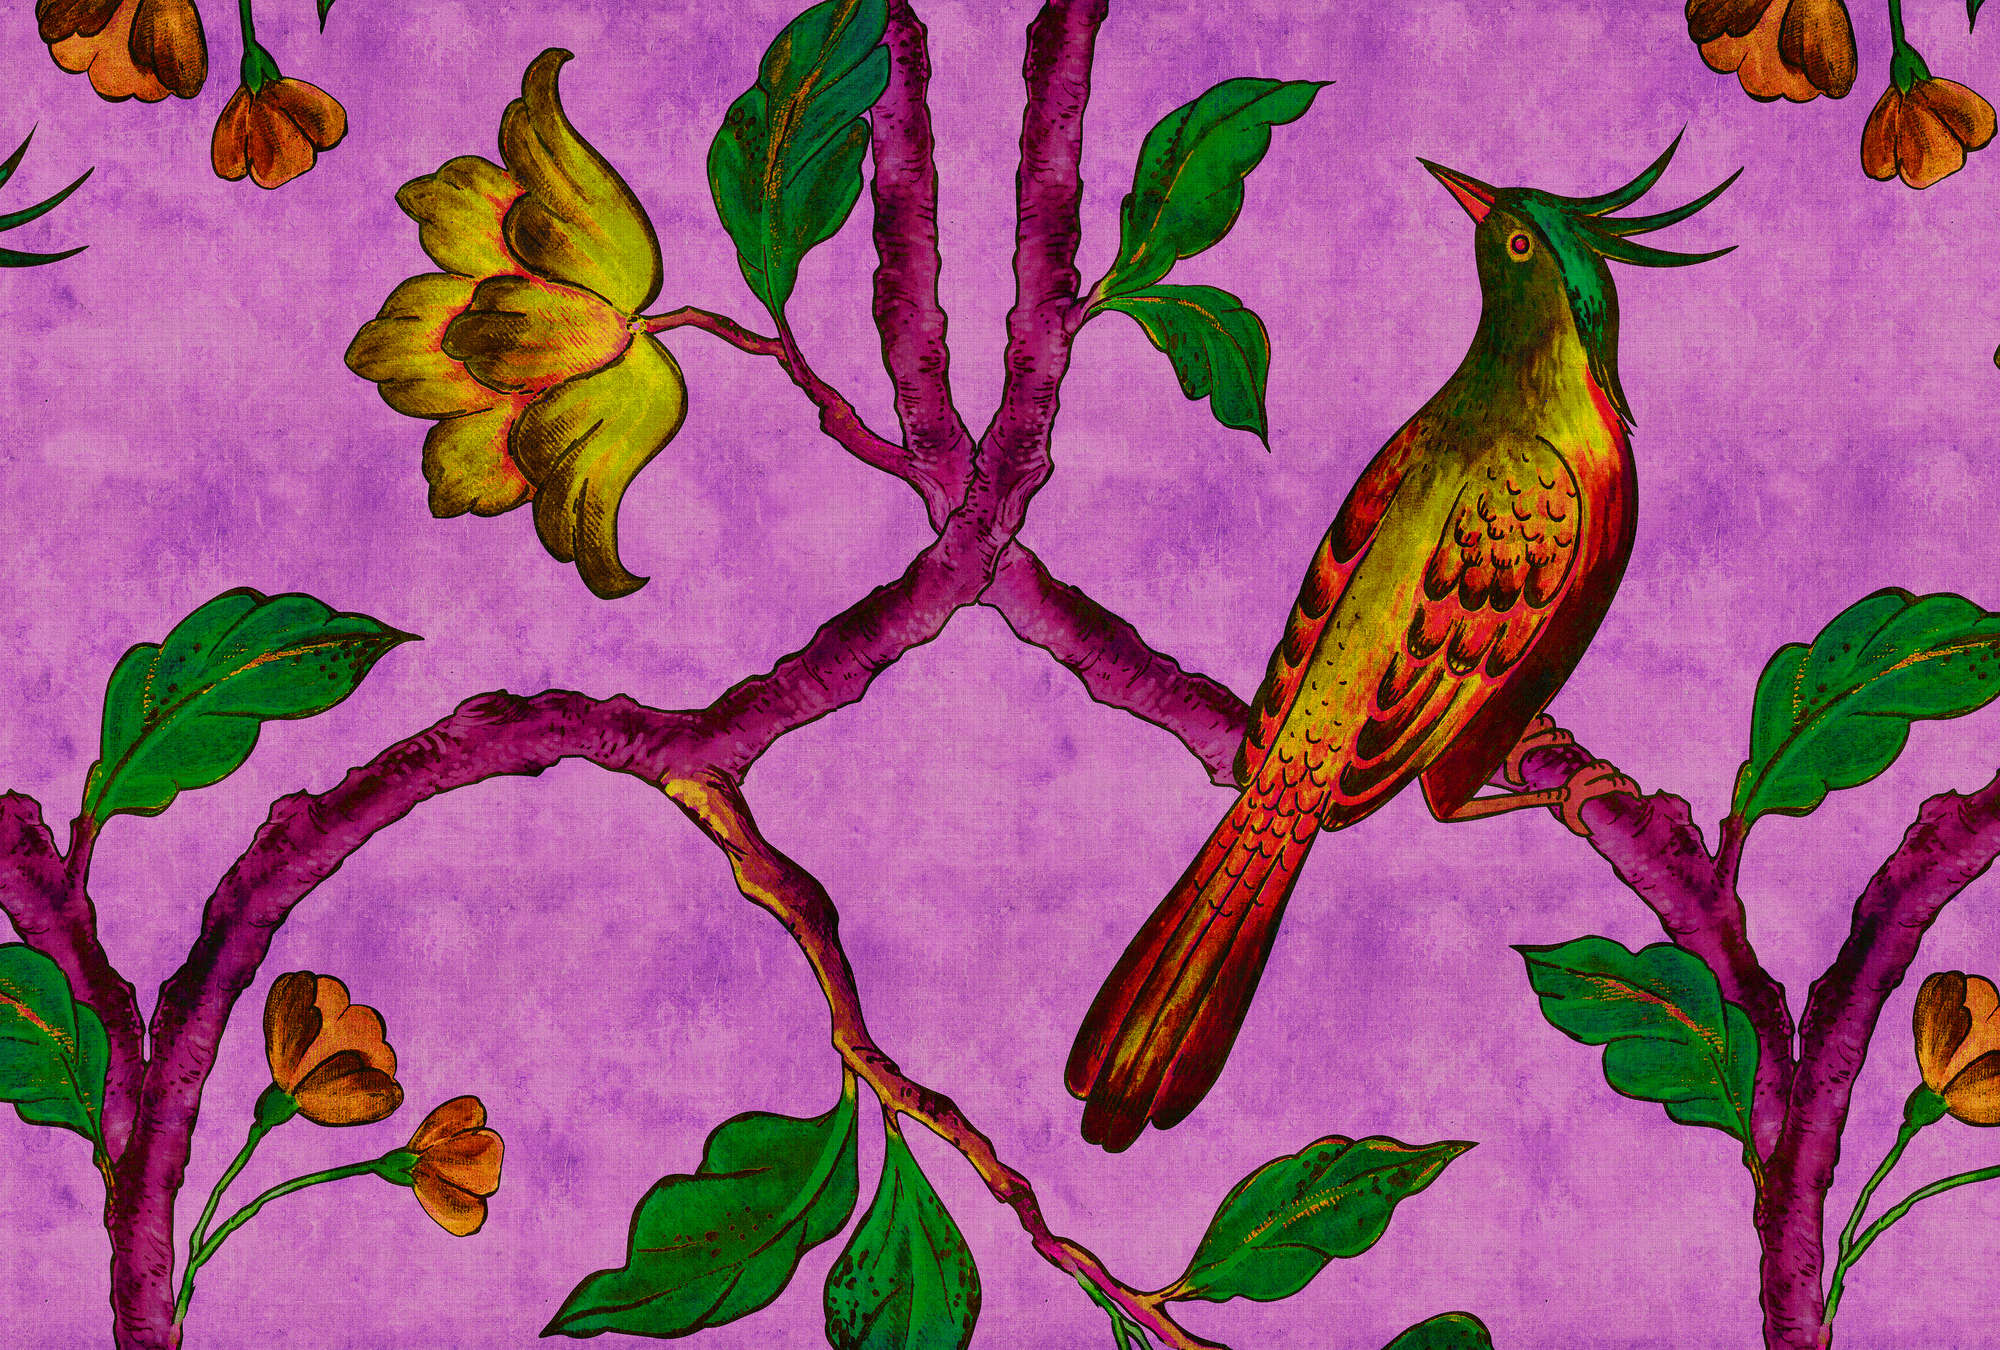             Bird Of Paradis 2 - papel pintado estampado digital ave del paraíso en estructura de lino natural - amarillo, verde | nácar liso
        